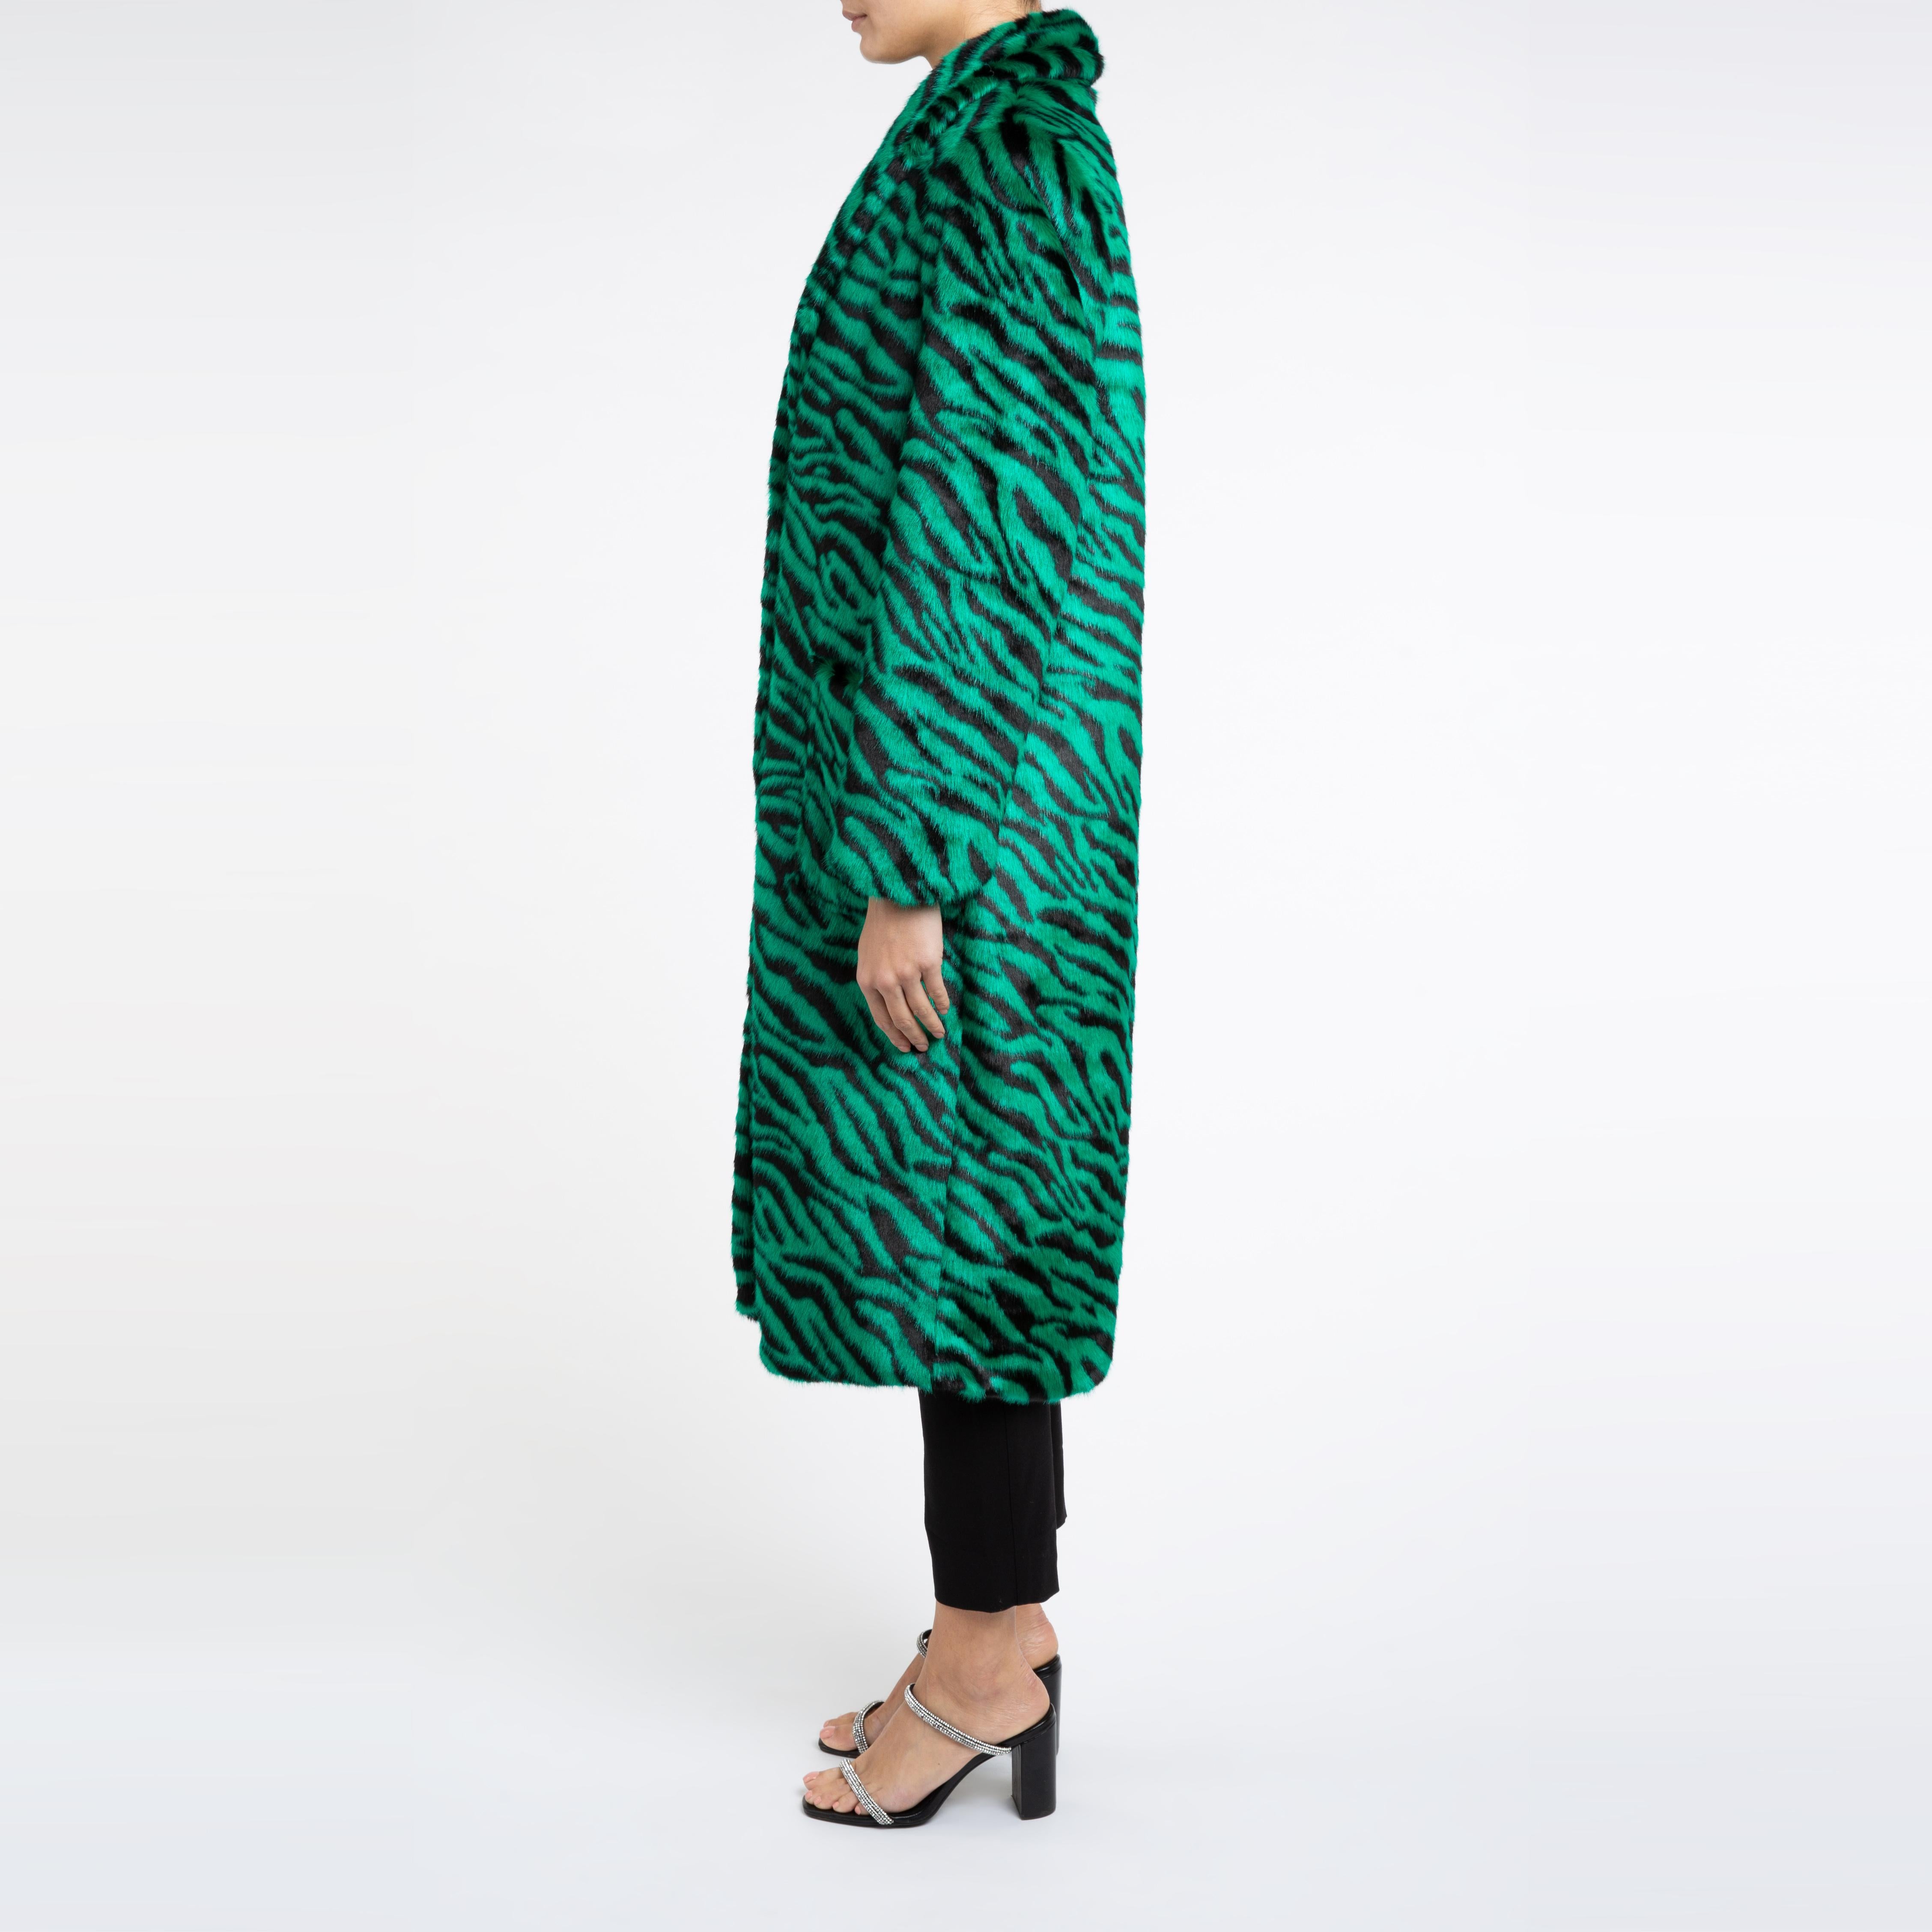 Esmeralda Kunstfell Mantel in Smaragdgrün Zebra Print Größe uk 14

Ein Mantel, den Sie sowohl zu Jeans als auch zu einem Kleid tragen können und der Sie in der kalten Jahreszeit warm hält. 
Dieses Longline-Design ist schmeichelhaft und lässt sich